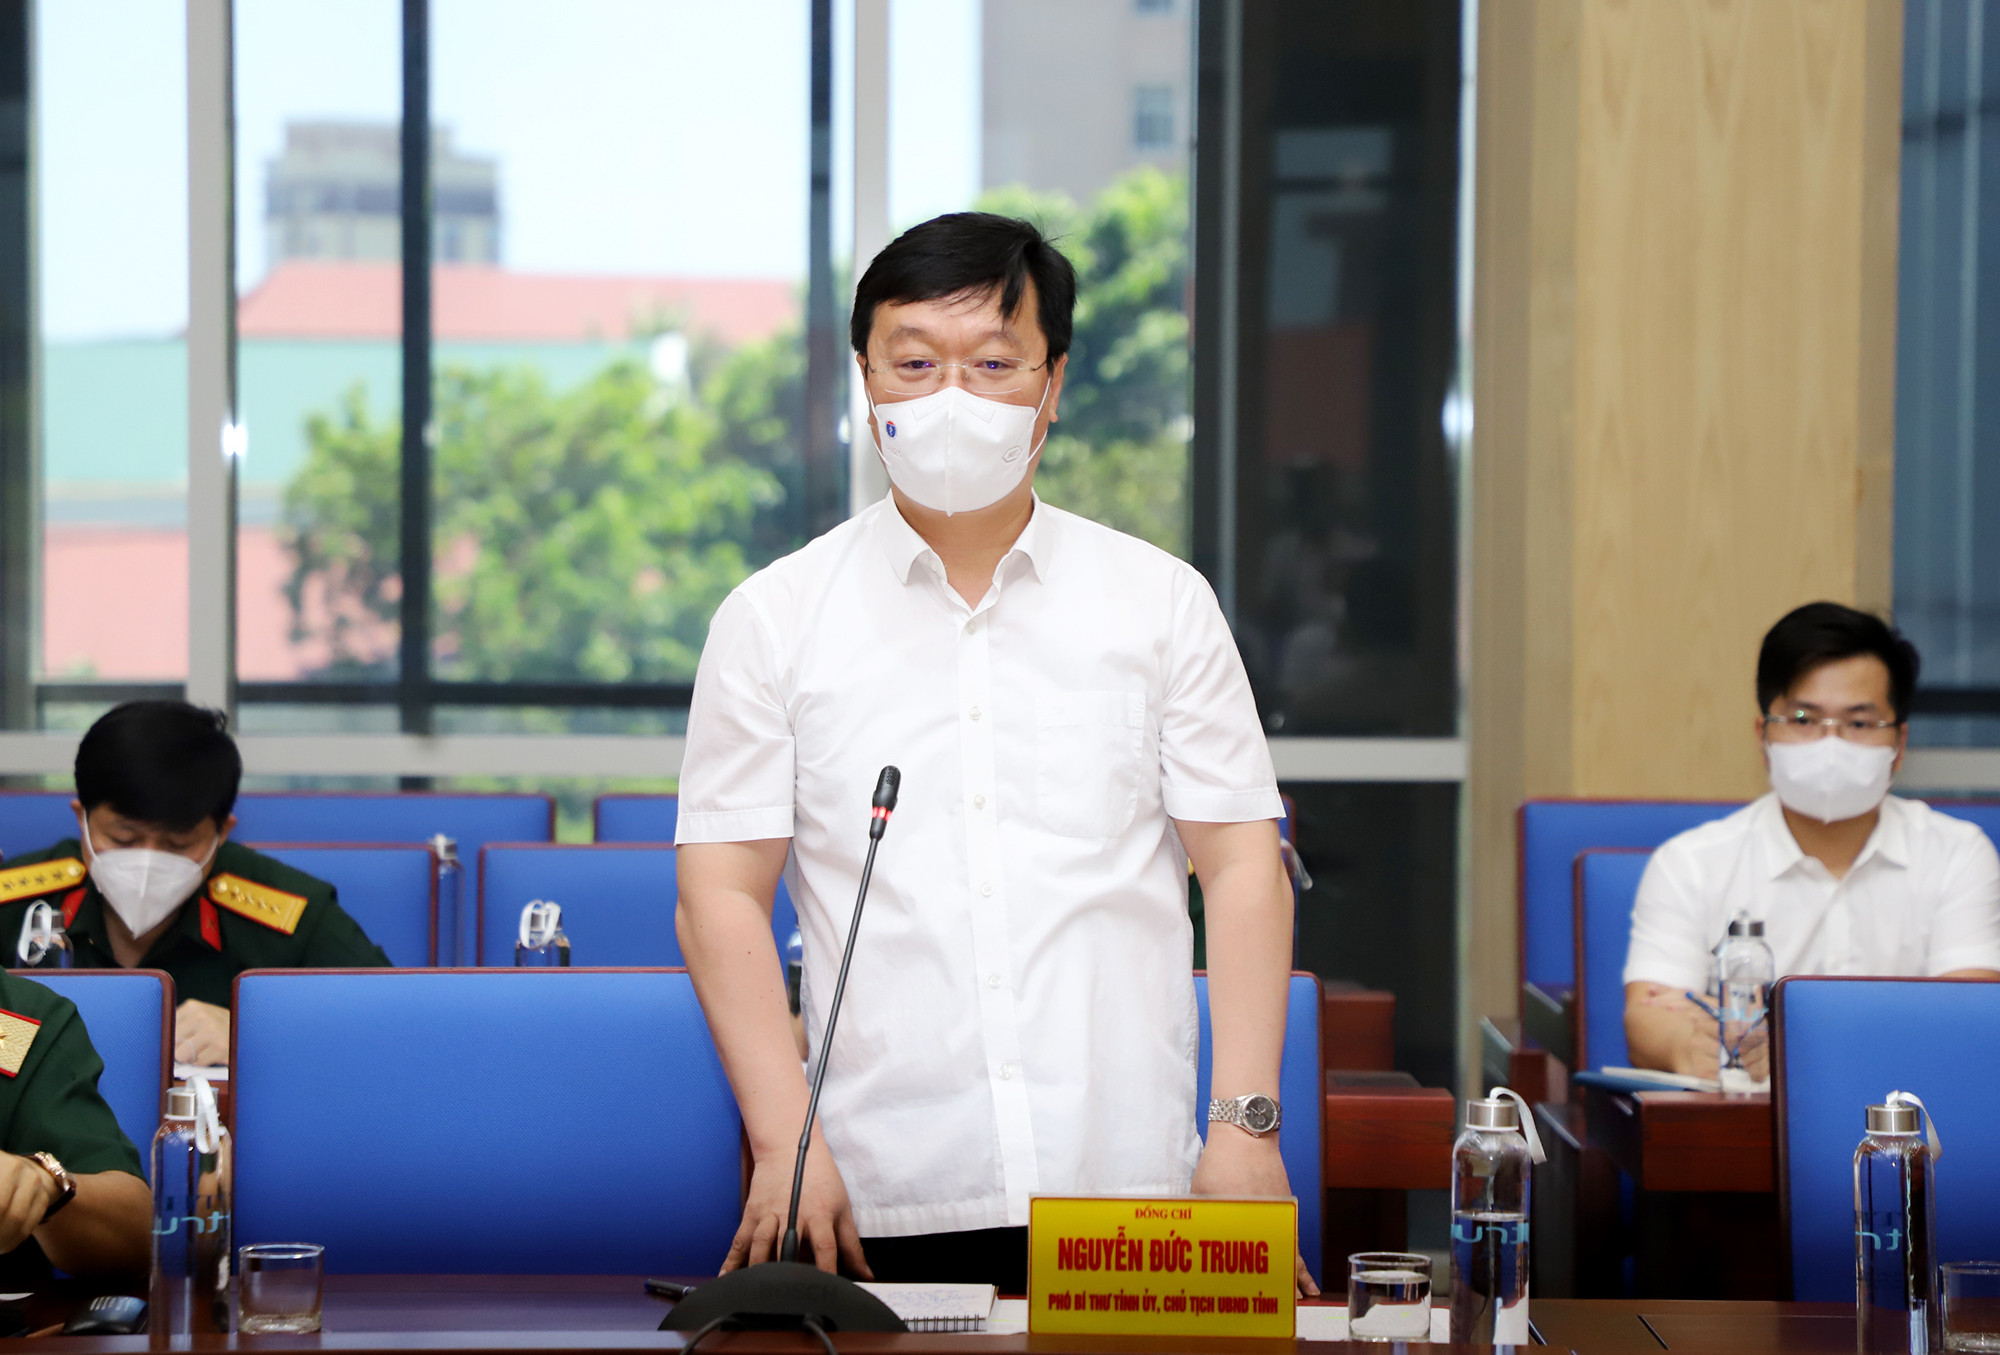 Đồng chí Nguyễn Đức Trung - Chủ tịch UBND tỉnh phát biểu tại buổi làm việc. Ảnh: Phạm Bằng